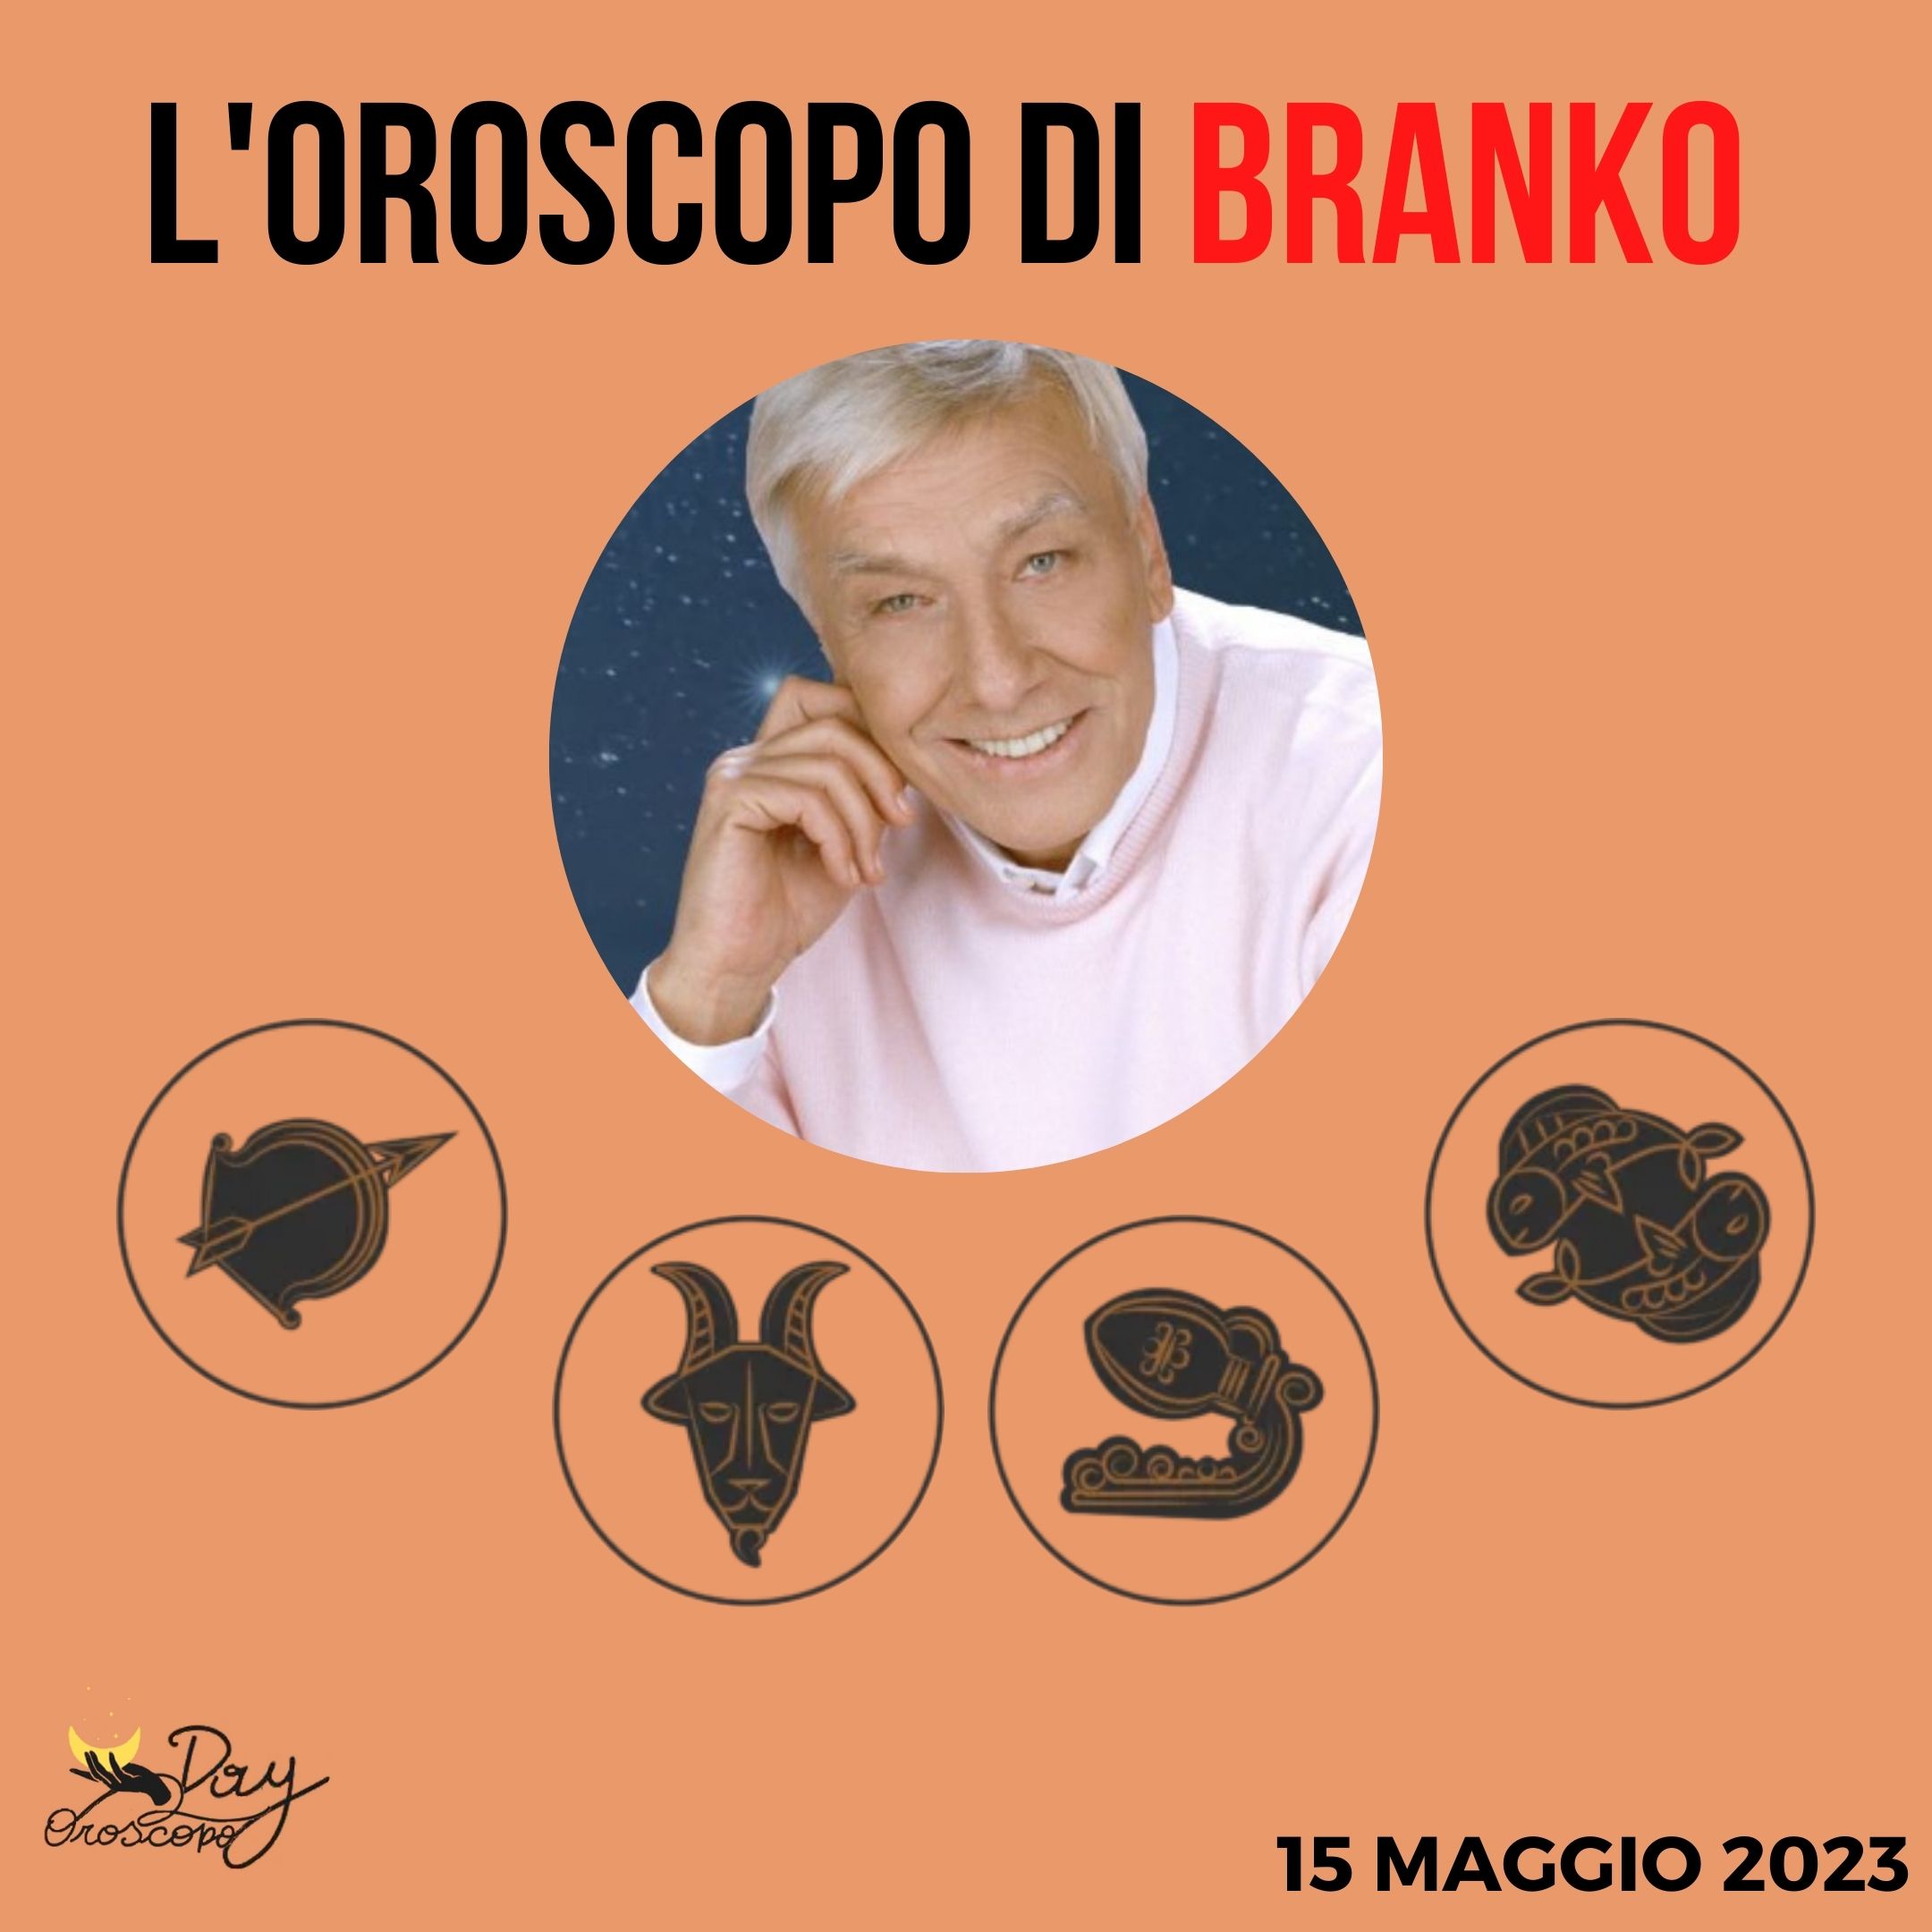 Oroscopo oggi domani Branko 15 maggio Sagittario Capricorno Acquario Pesci